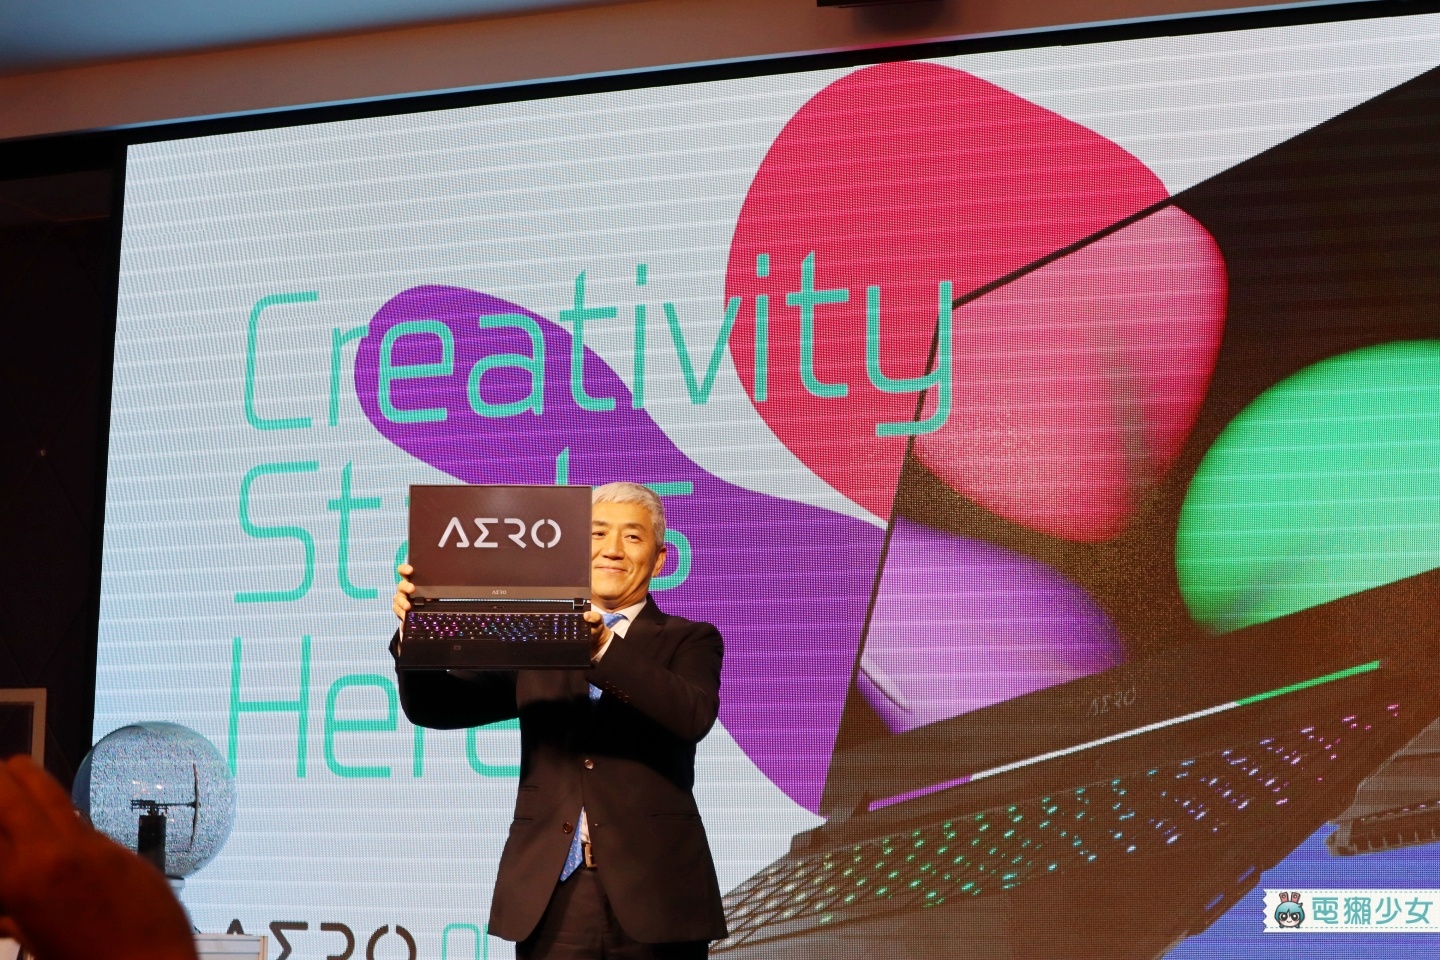 技嘉發表最新New AERO系列筆電 4K OLED螢幕、最高搭載i9-9980HK處理器、Pantone認證螢幕 打造行動工作室！[Computex2019]